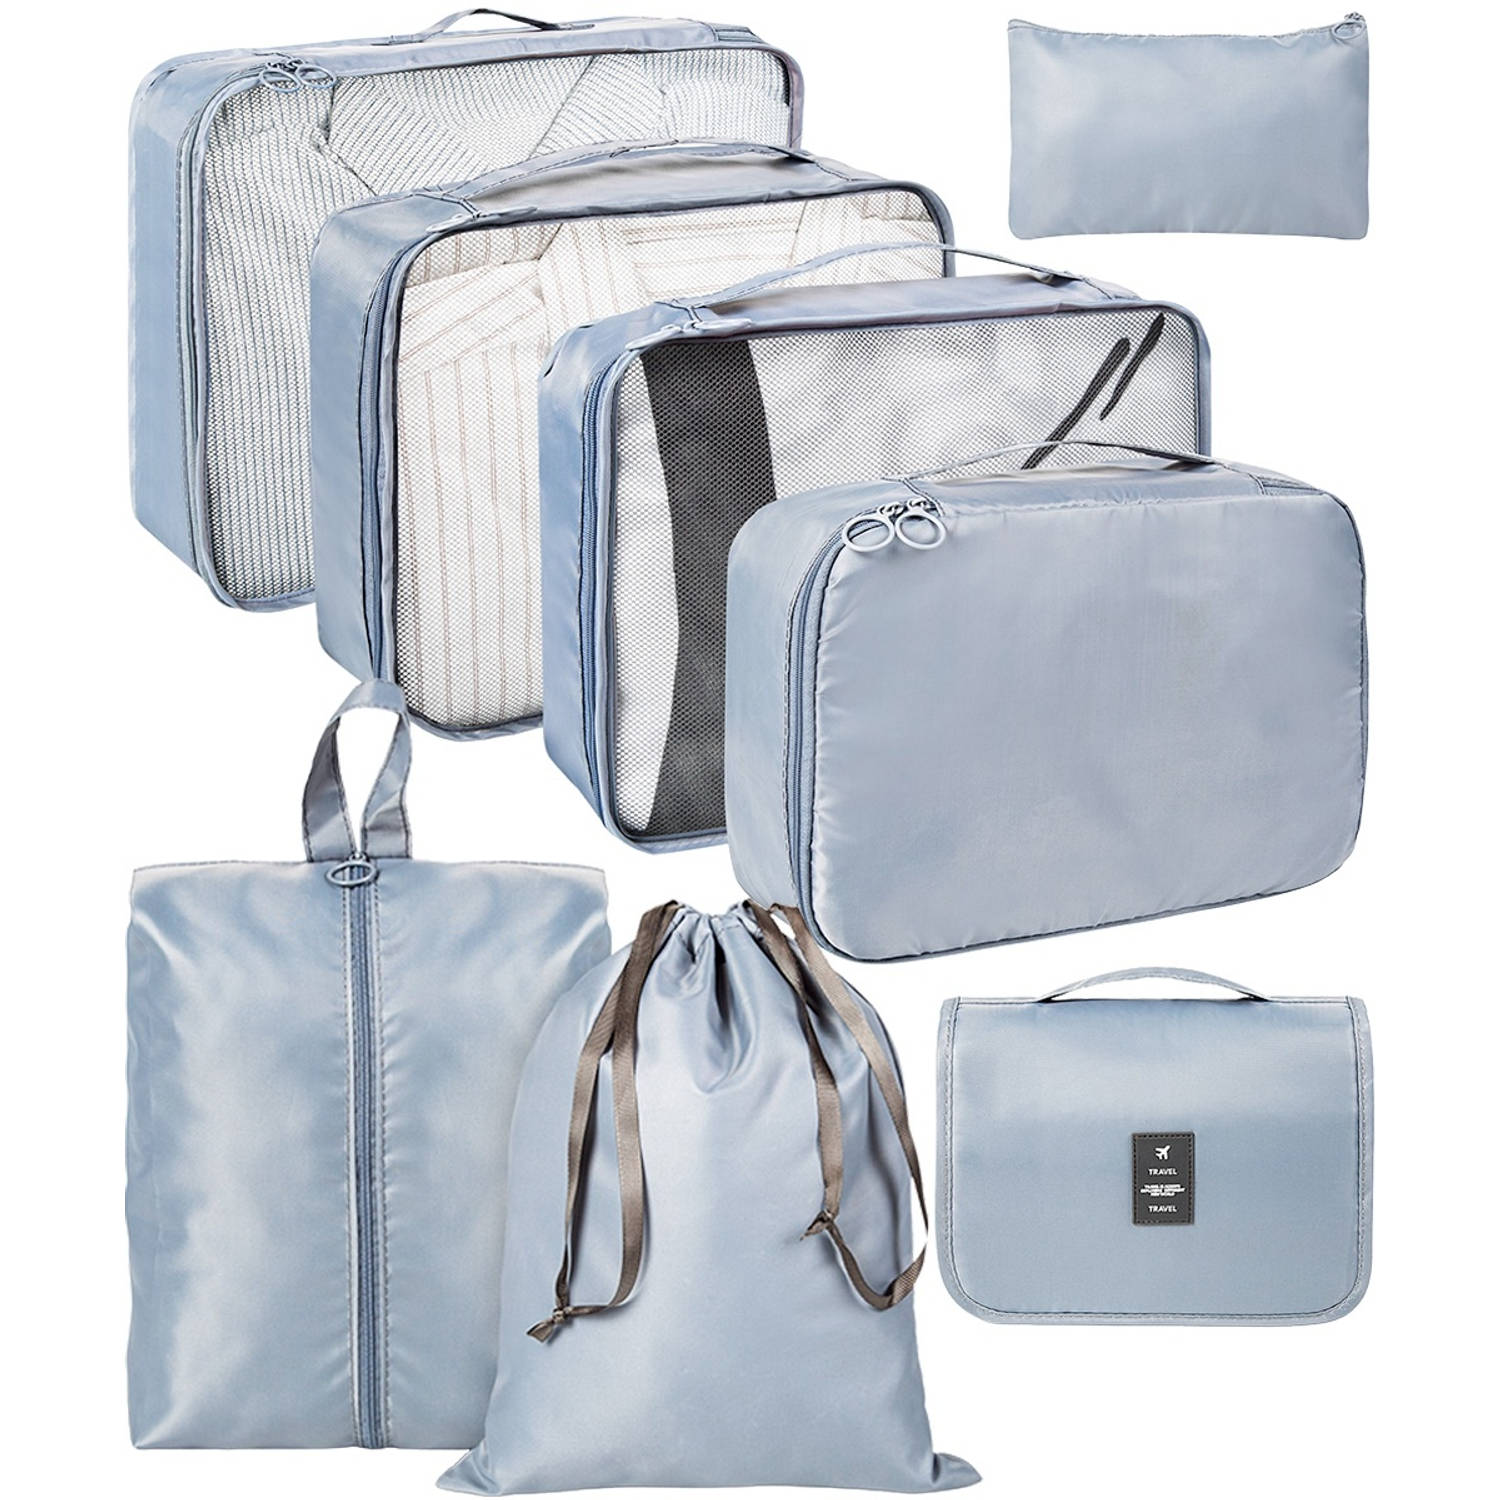 ForDig 8-Delige Packing Cubes (Grijs) - Koffer Organizer Set - Bagage Organizers - Compression Cube Tassen - Travel Backpack Kleding Zakken